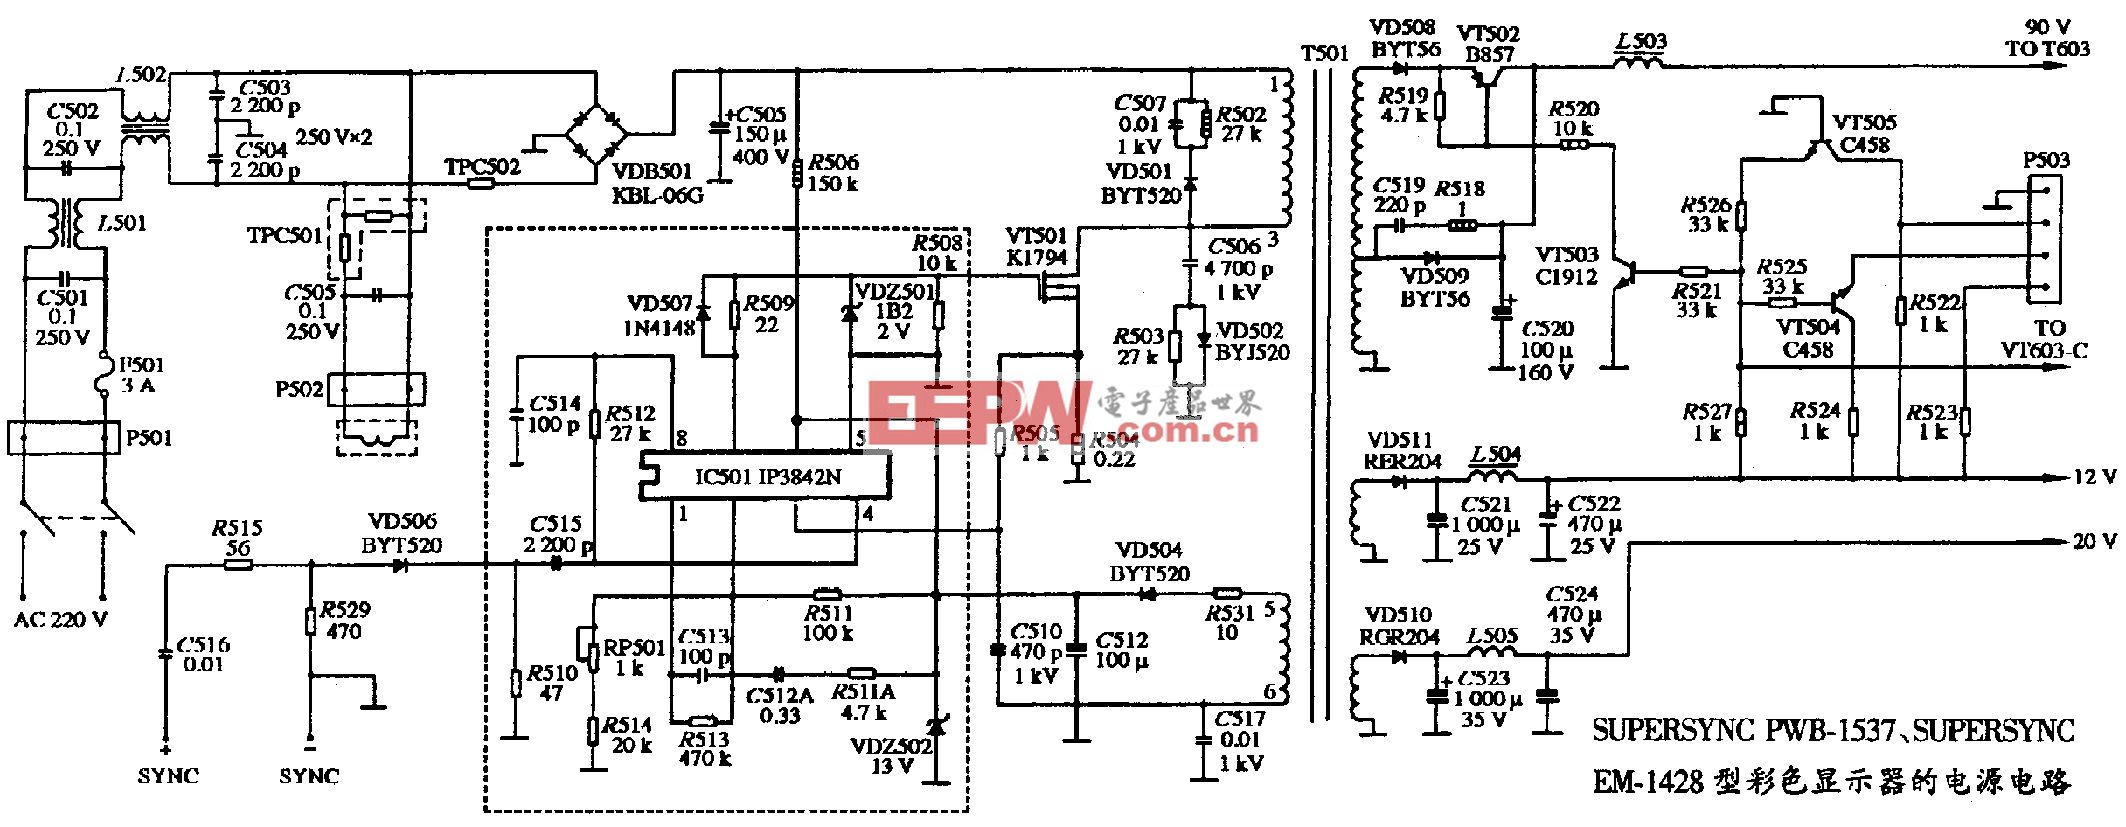 092、EM-1428二种机型彩色显示器的电源电路图